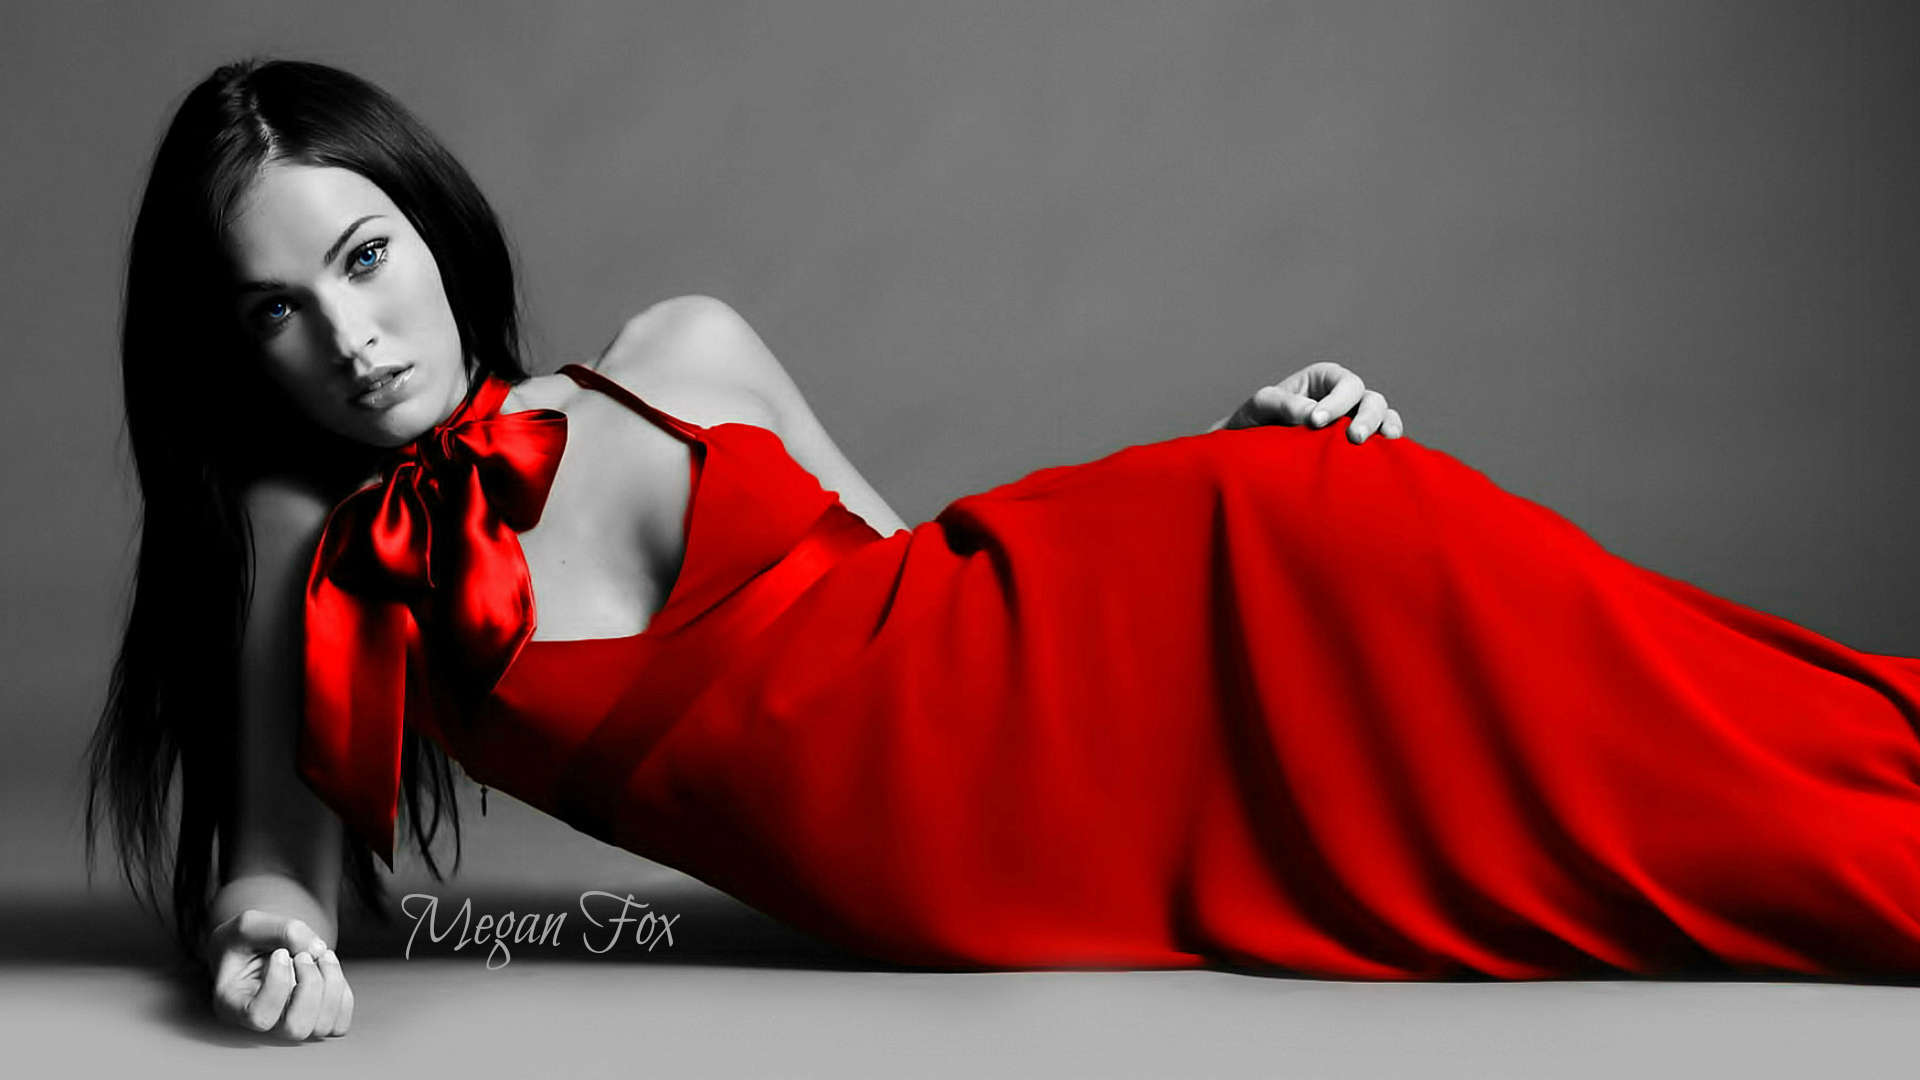 Megan Fox HD Images